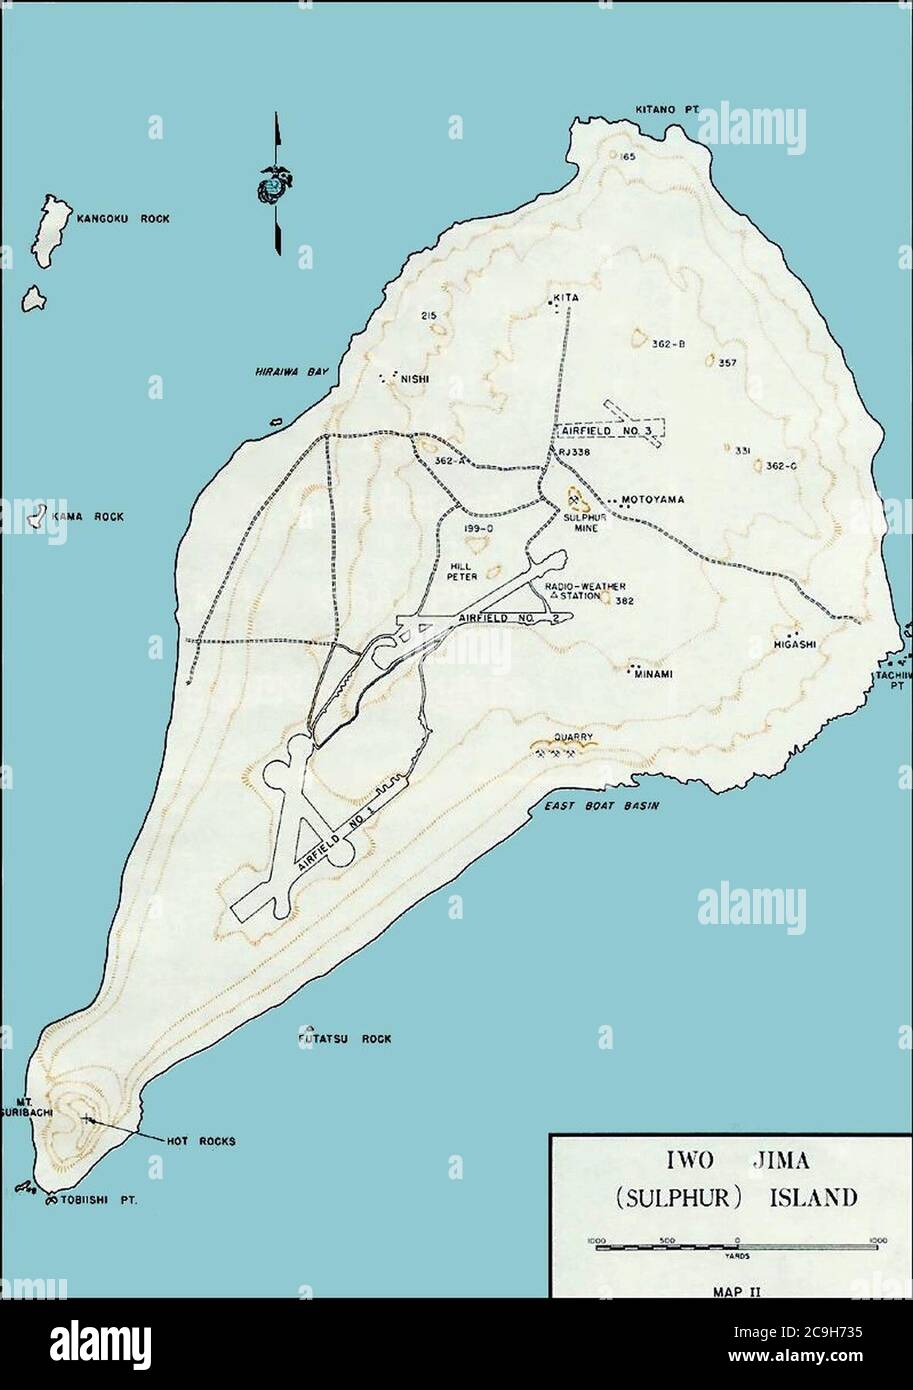 Iwo Jima - map. Stock Photo